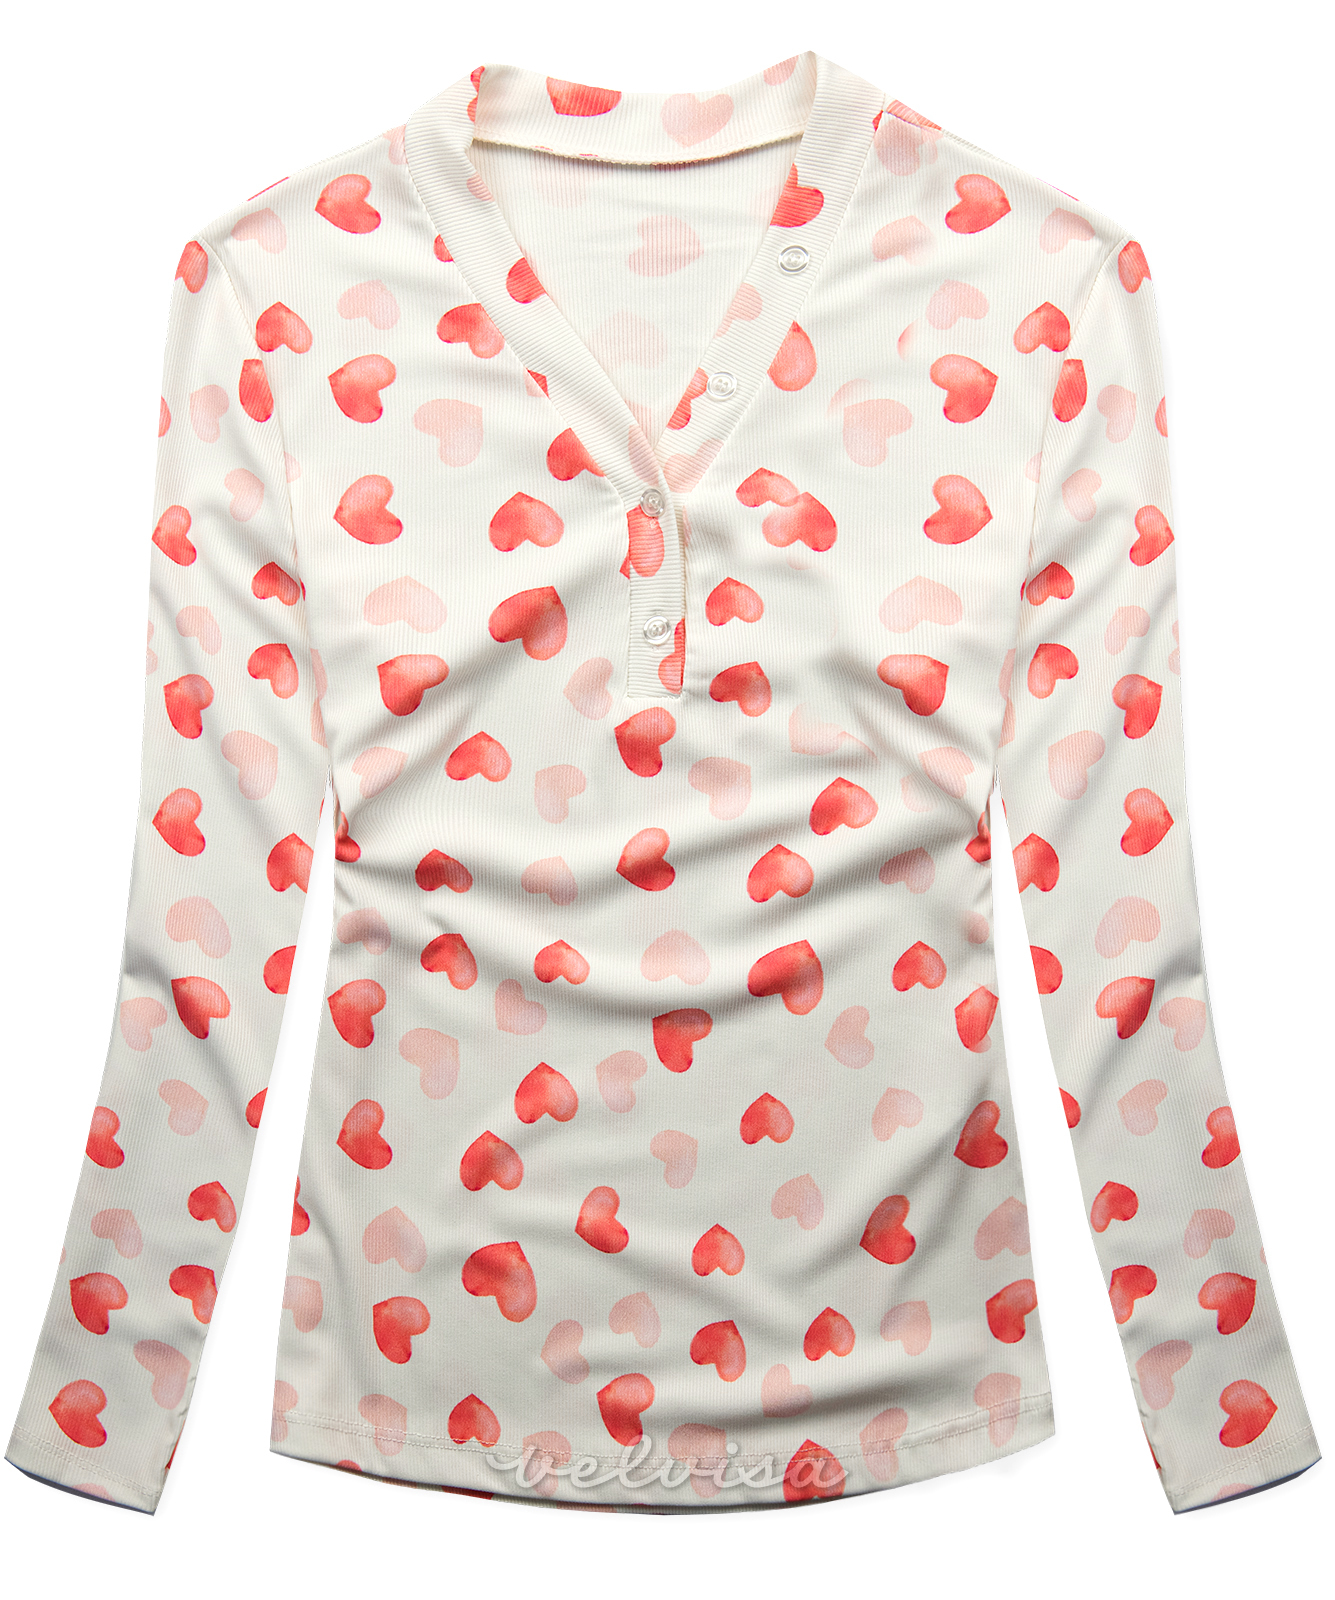 Majica s printom srca bijela/ružičasta HEART3